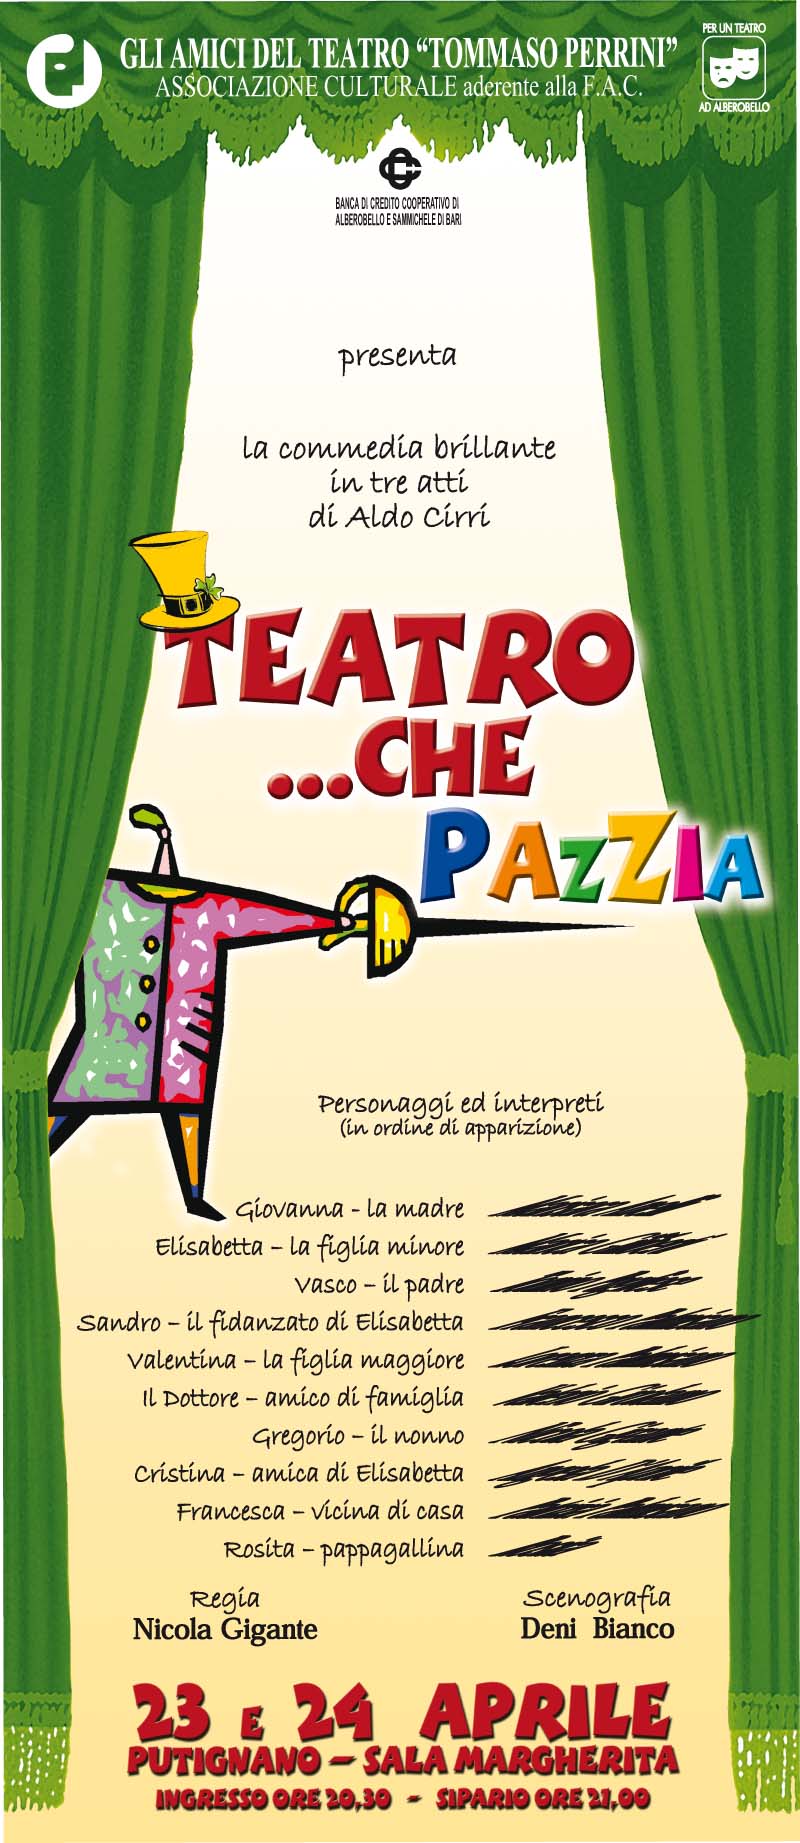 Teatro che pazzia- Locandina 2008